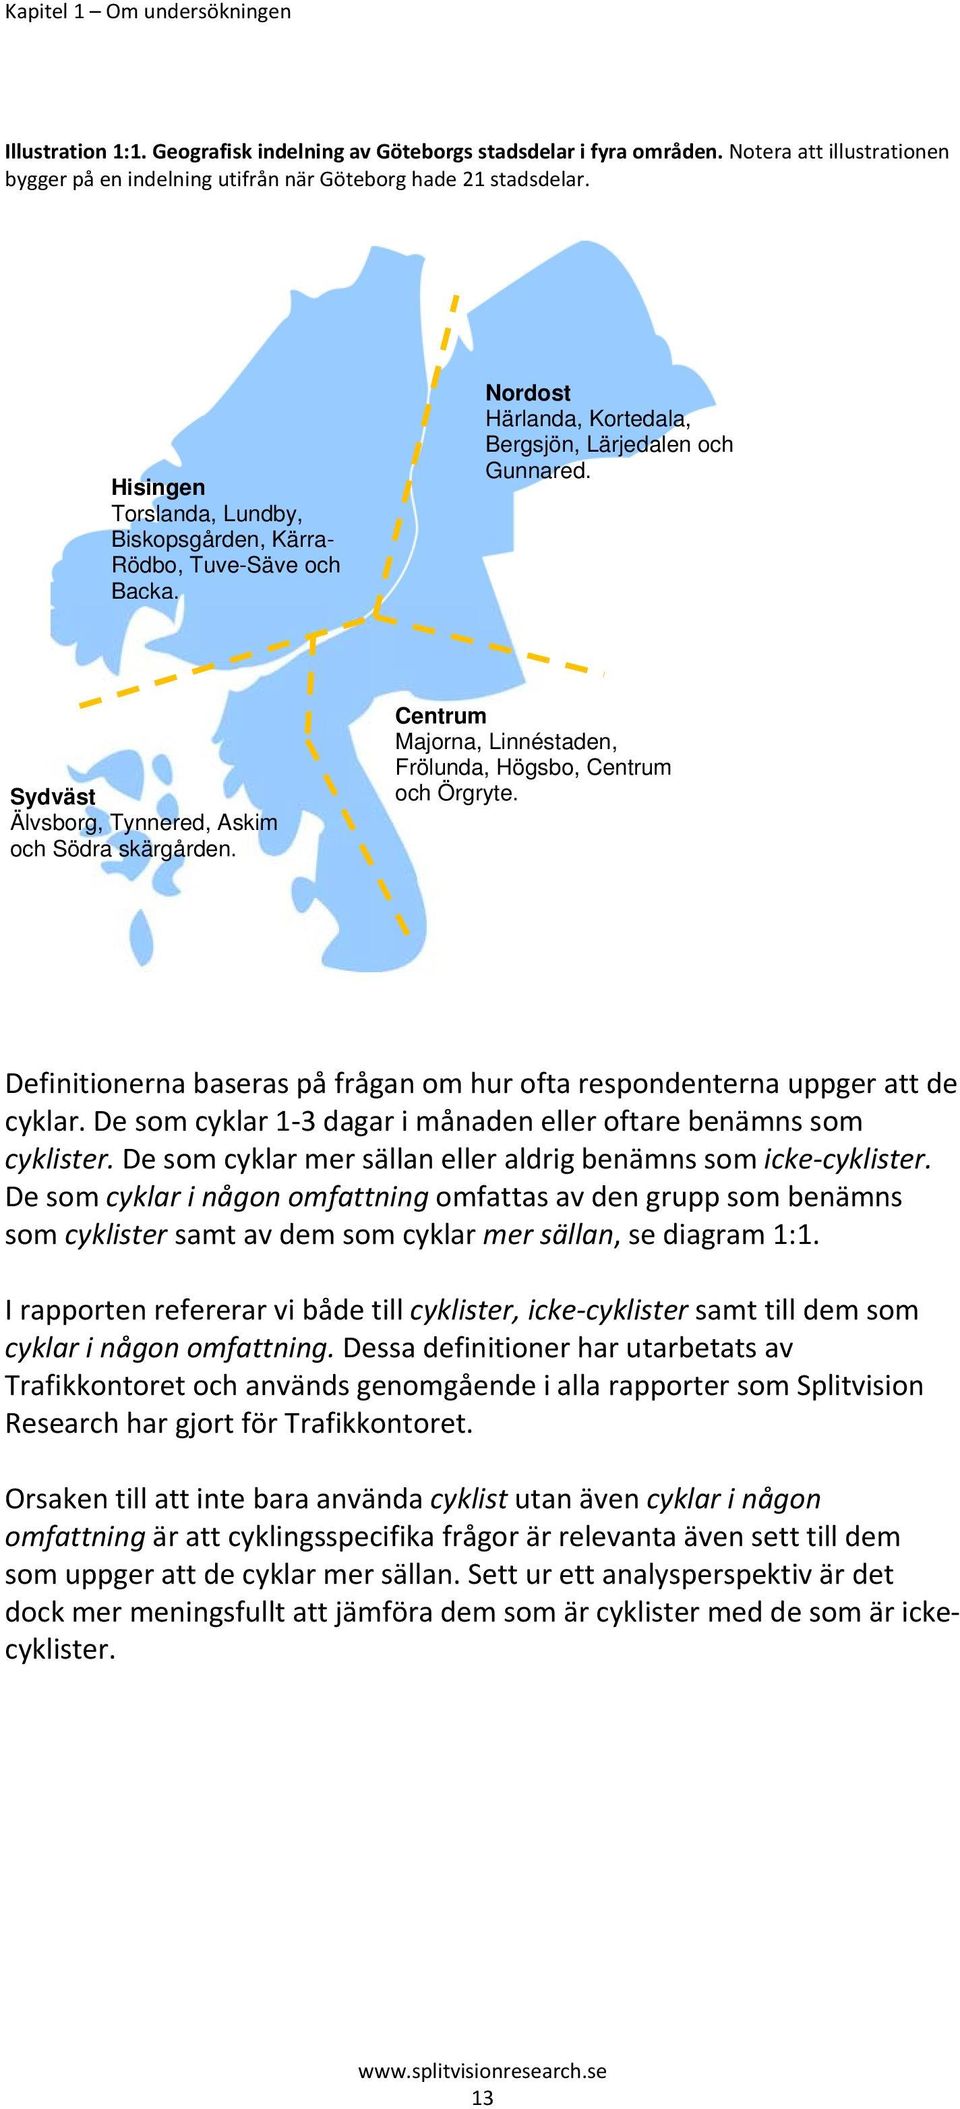 Centrum Majorna, Linnéstaden, Frölunda, Högsbo, Centrum och Örgryte. Definitionerna baseras på frågan om hur ofta respondenterna uppger att de cyklar.